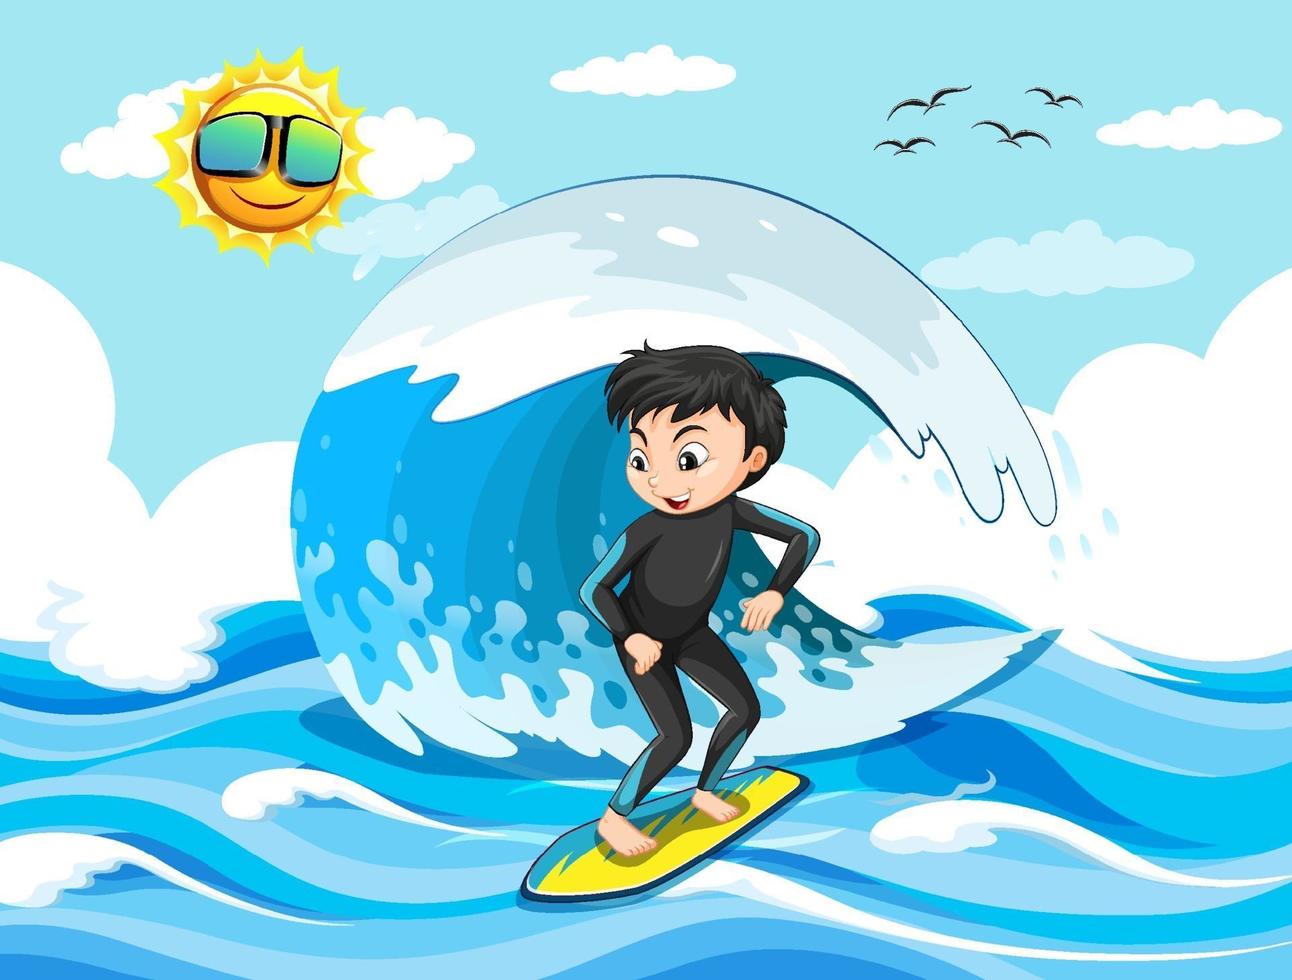 grande onda na cena do oceano com o menino em uma prancha de surf vetor